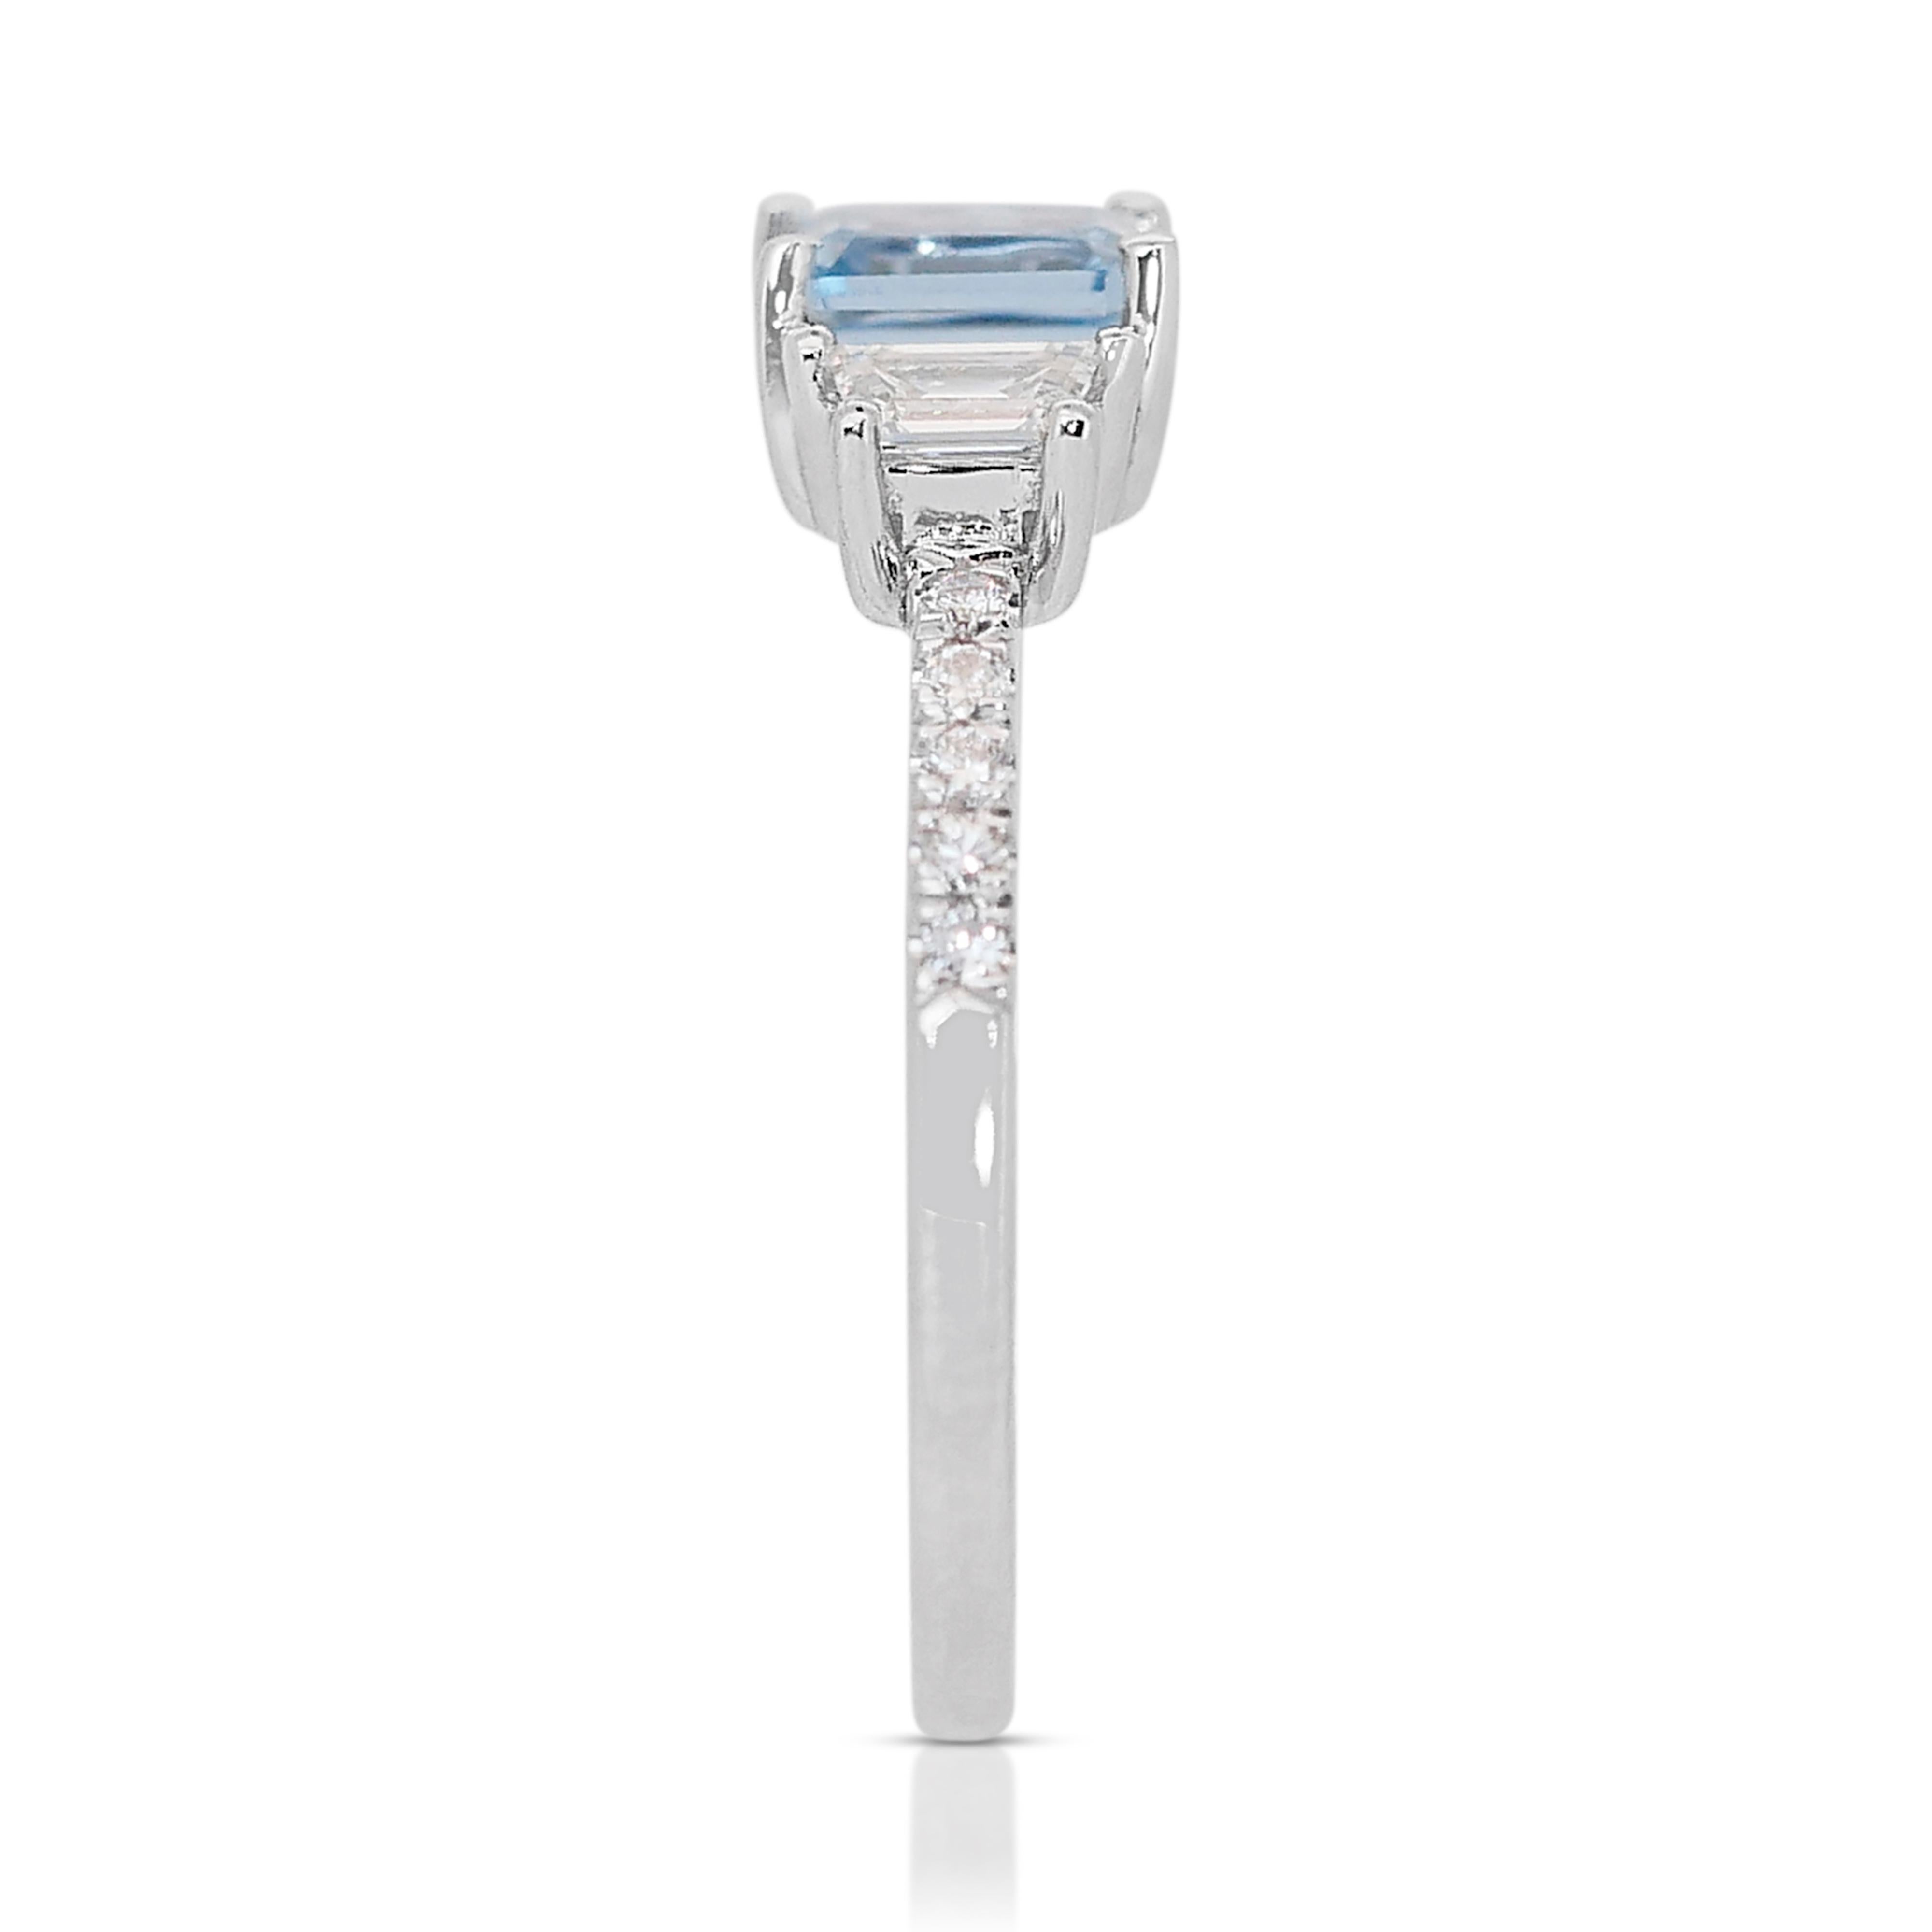 Elegant 1.28ct Aquamarine and Diamonds 3-Stone Ring in 18k White Gold - IGI Cert For Sale 2